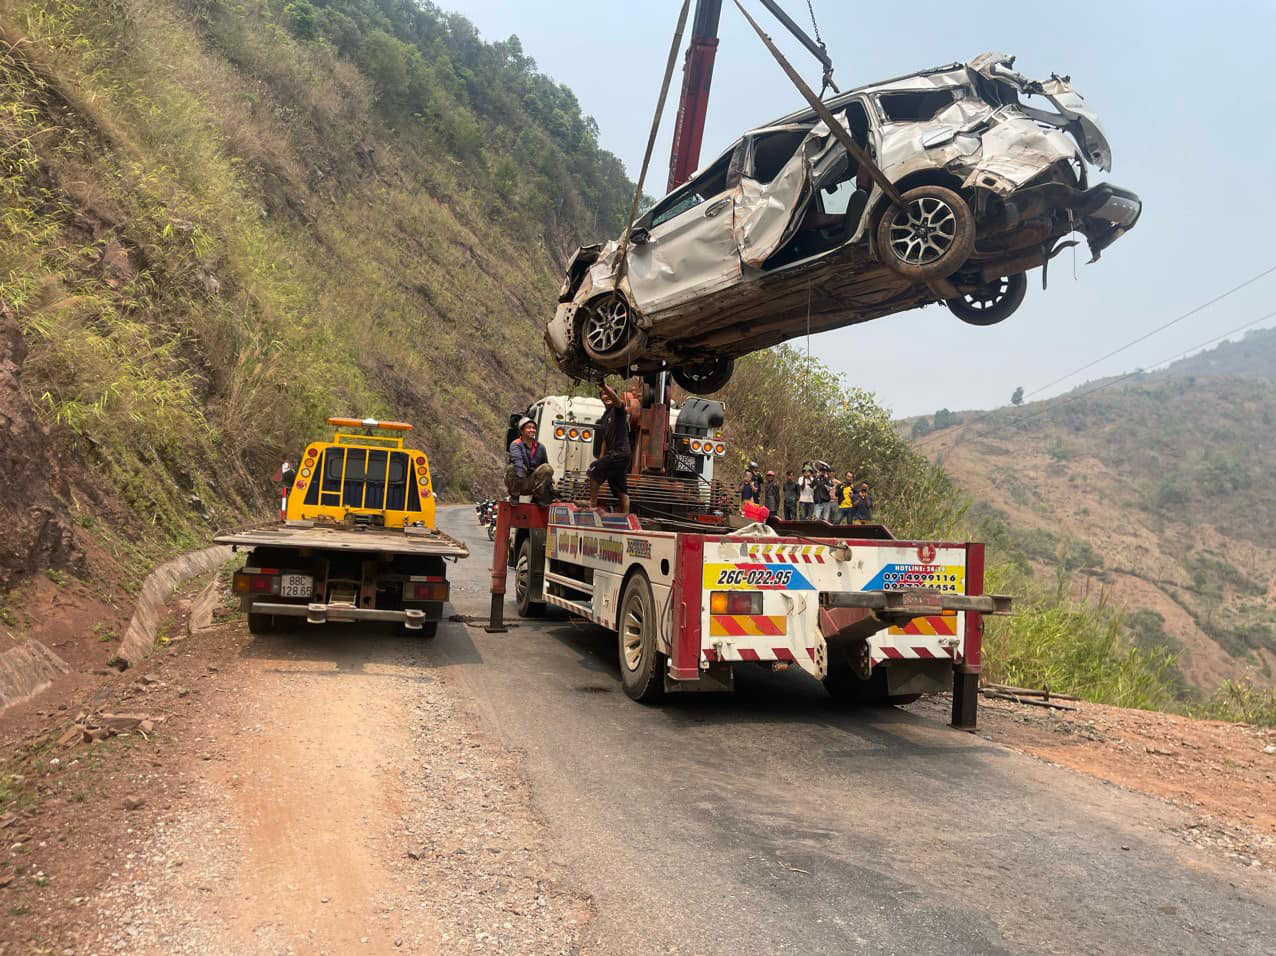 Phải mất hai ngày, đội cứu hộ giao thông Sơn La mới đưa được chiếc xe lên đường để mang đi sửa chữa - Ảnh: A.T.